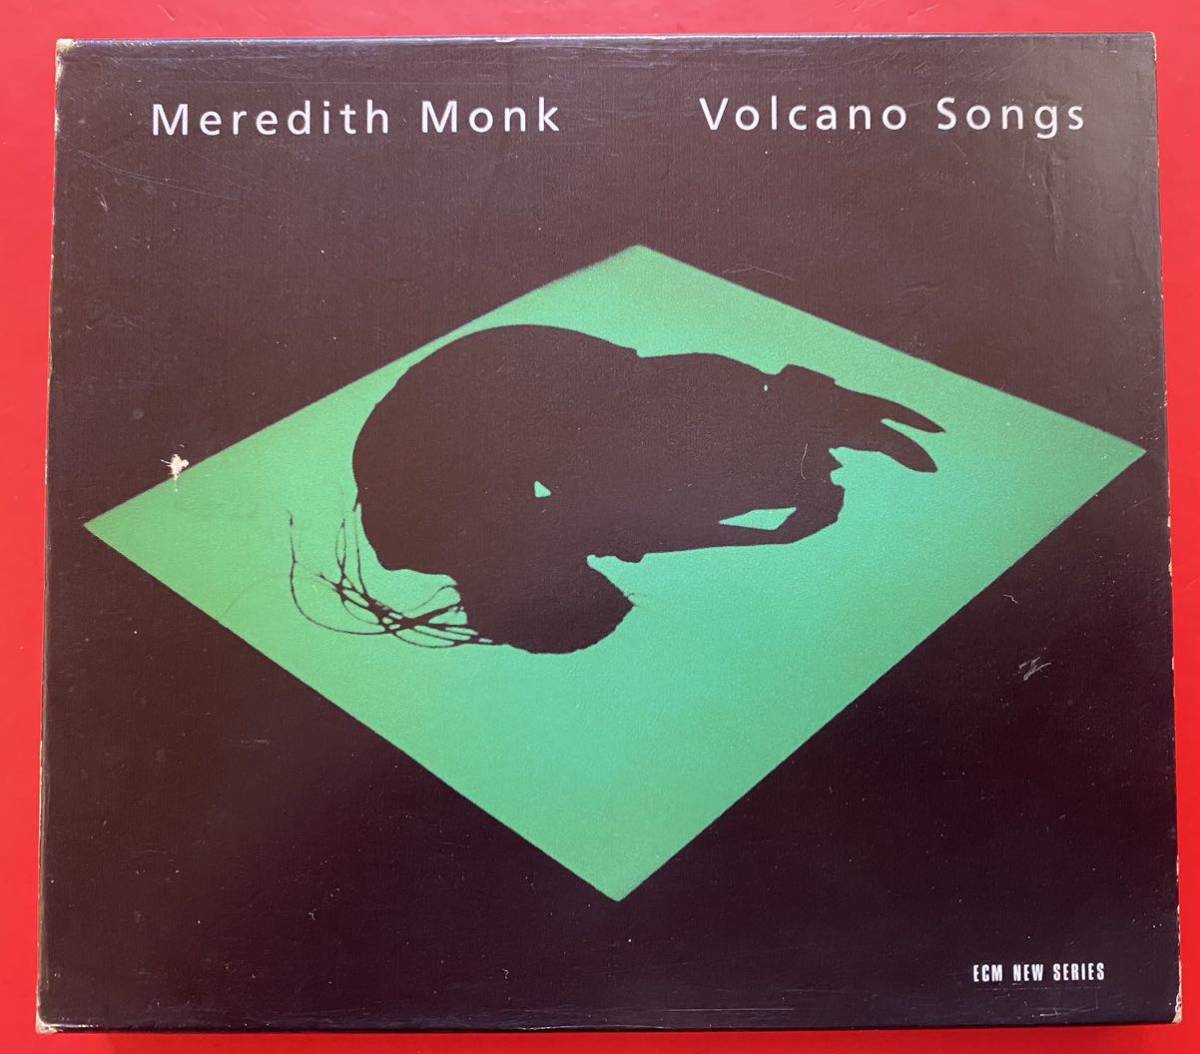 【CD】メレディス・モンク「Volcano Songs」 Meredith Monk 国内盤 盤面良好 [11300287]_画像1